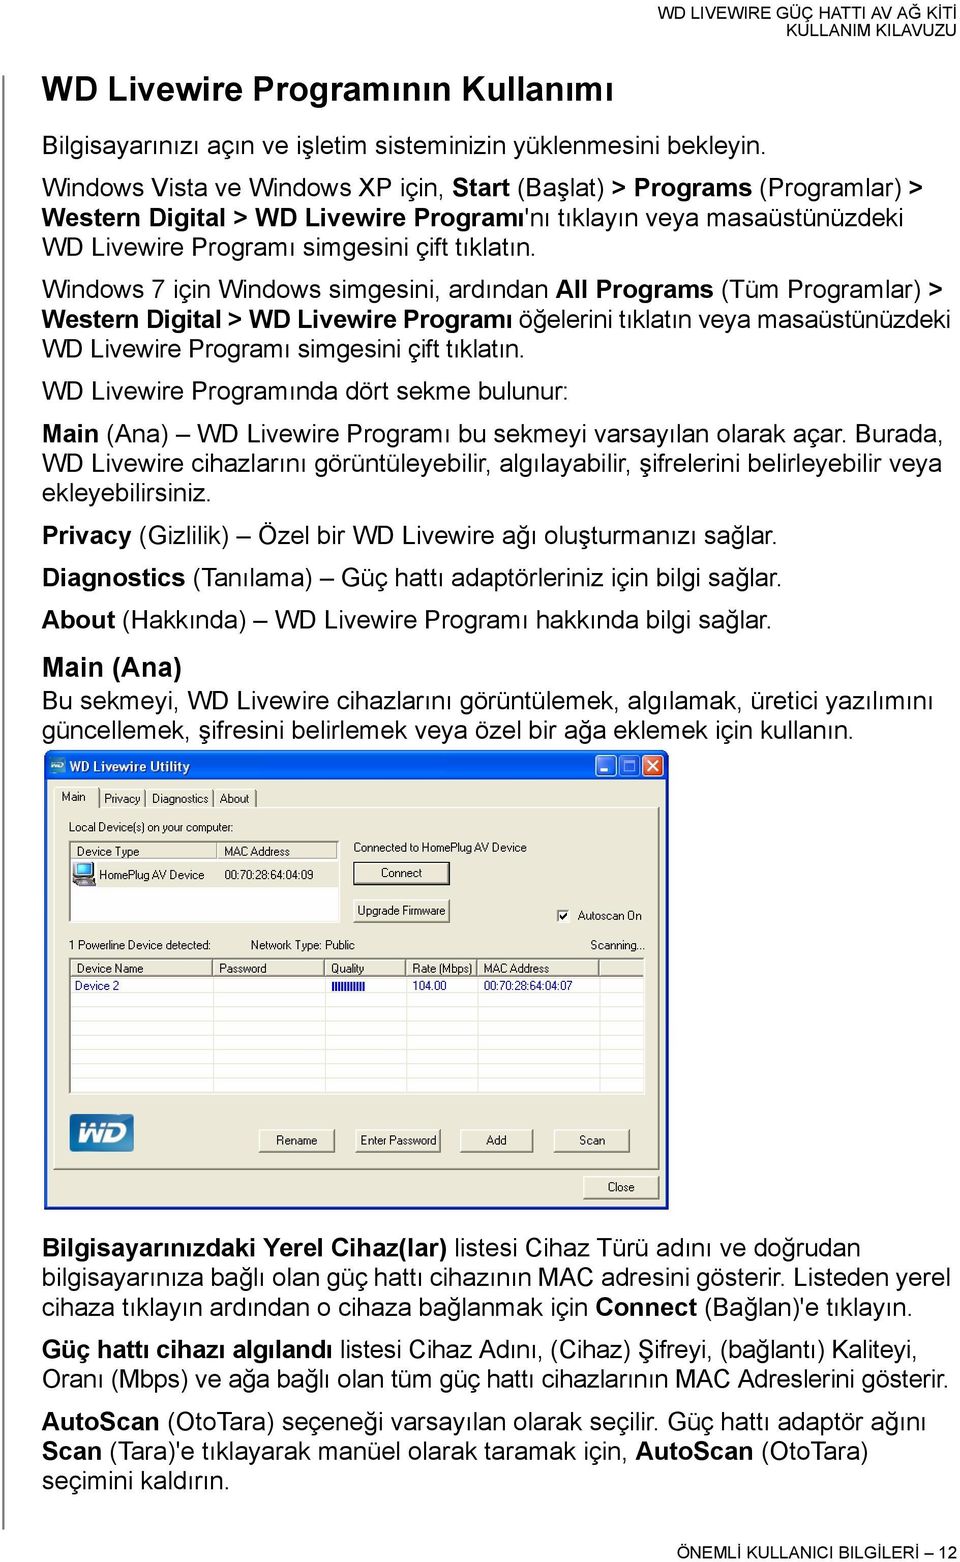 Windows 7 için Windows simgesini, ardından All Programs (Tüm Programlar) > Western Digital > WD Livewire Programı öğelerini tıklatın veya masaüstünüzdeki WD Livewire Programı simgesini çift tıklatın.